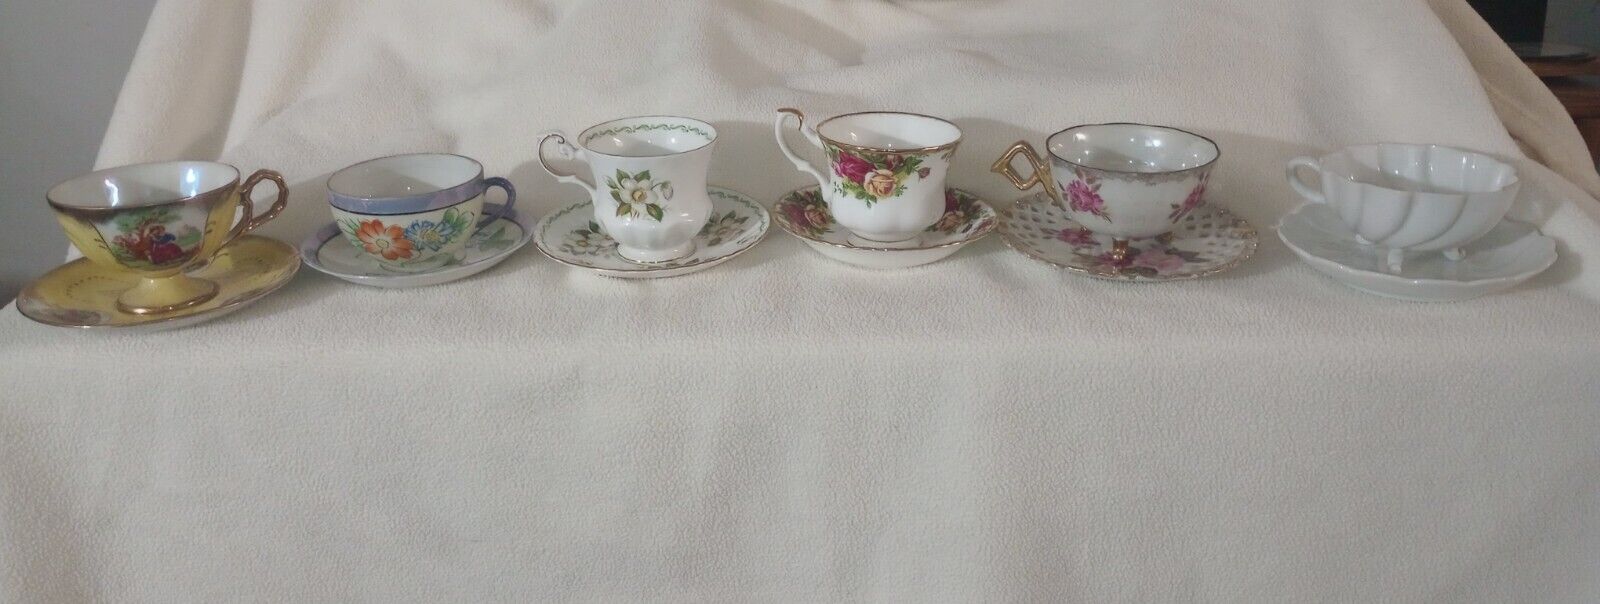 Lot Of 6 Vintage/Antique Tea Cups/Saucers Sets